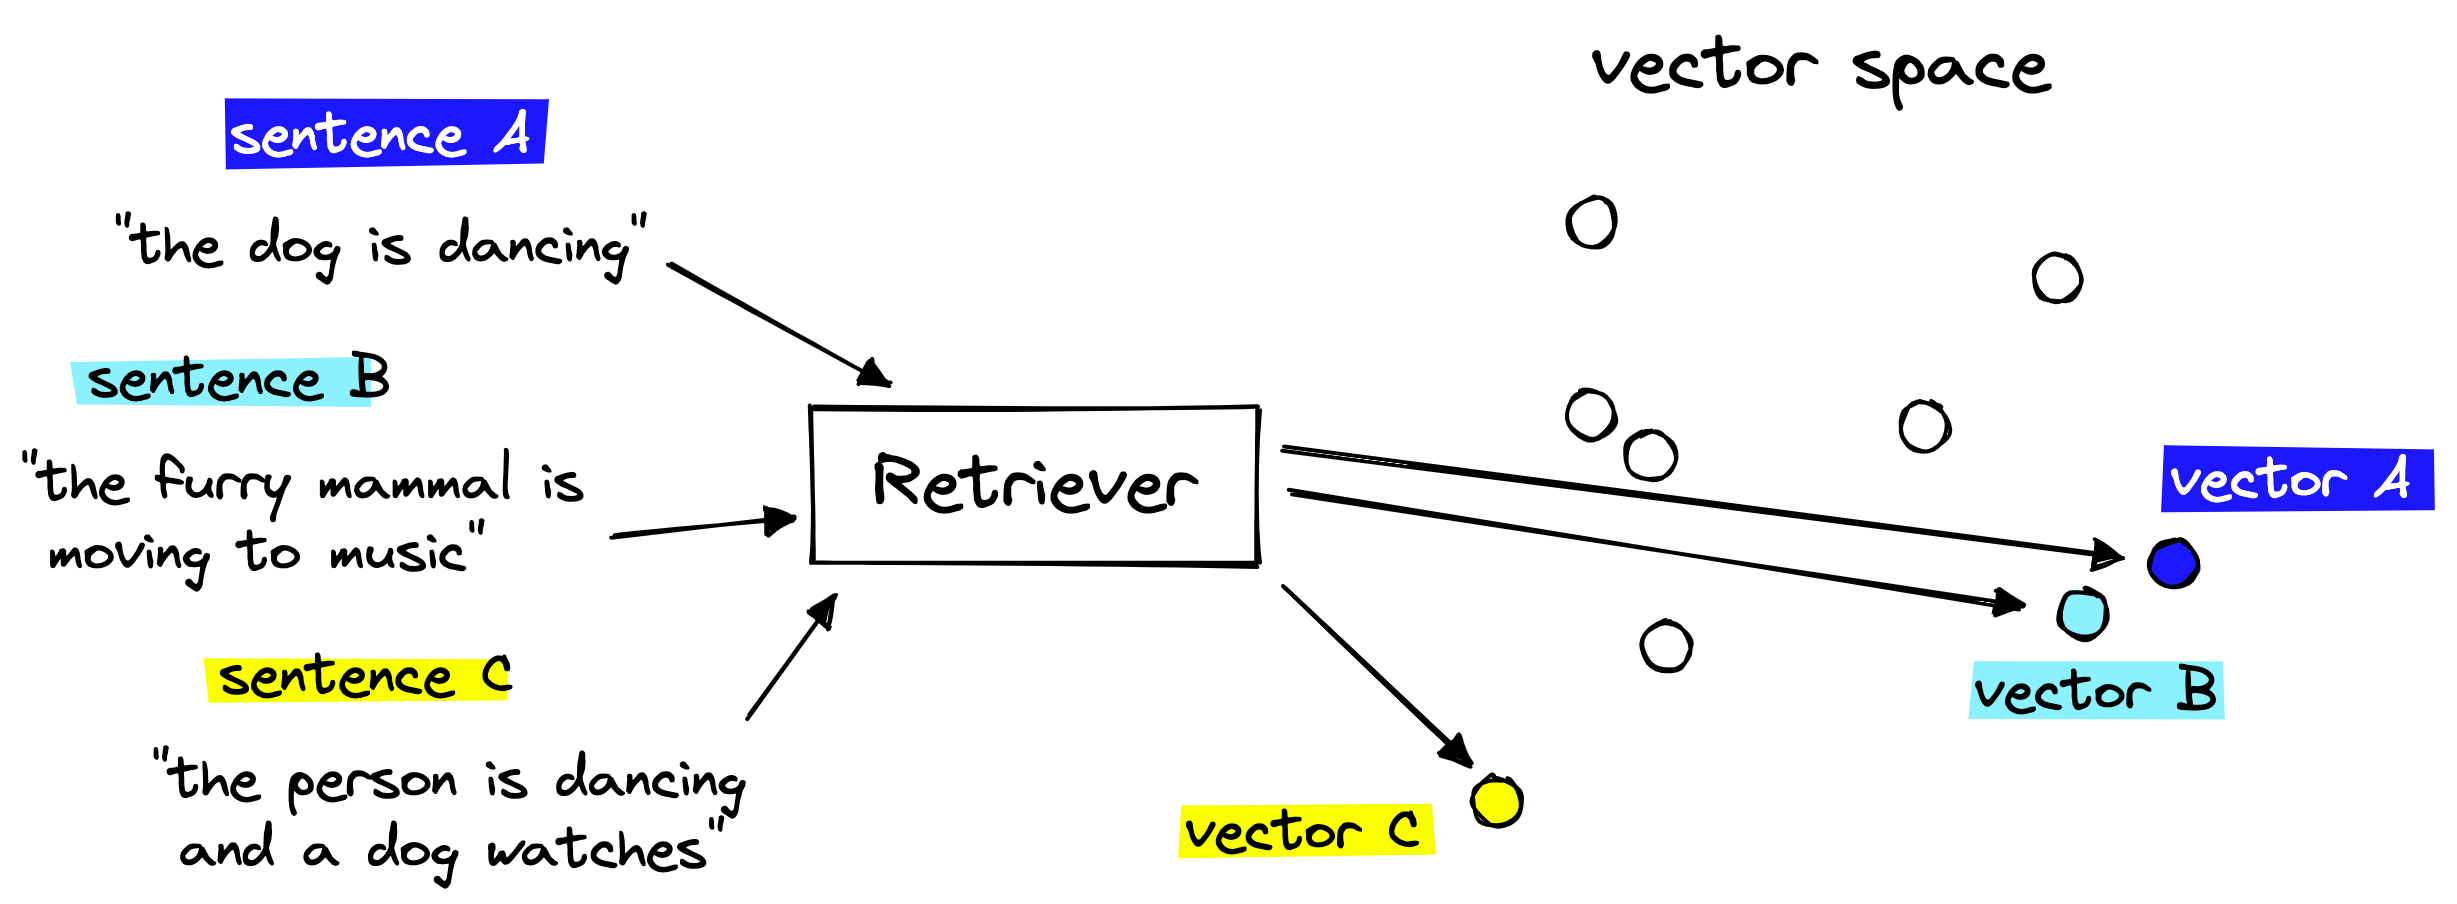 retriever-to-vector-space